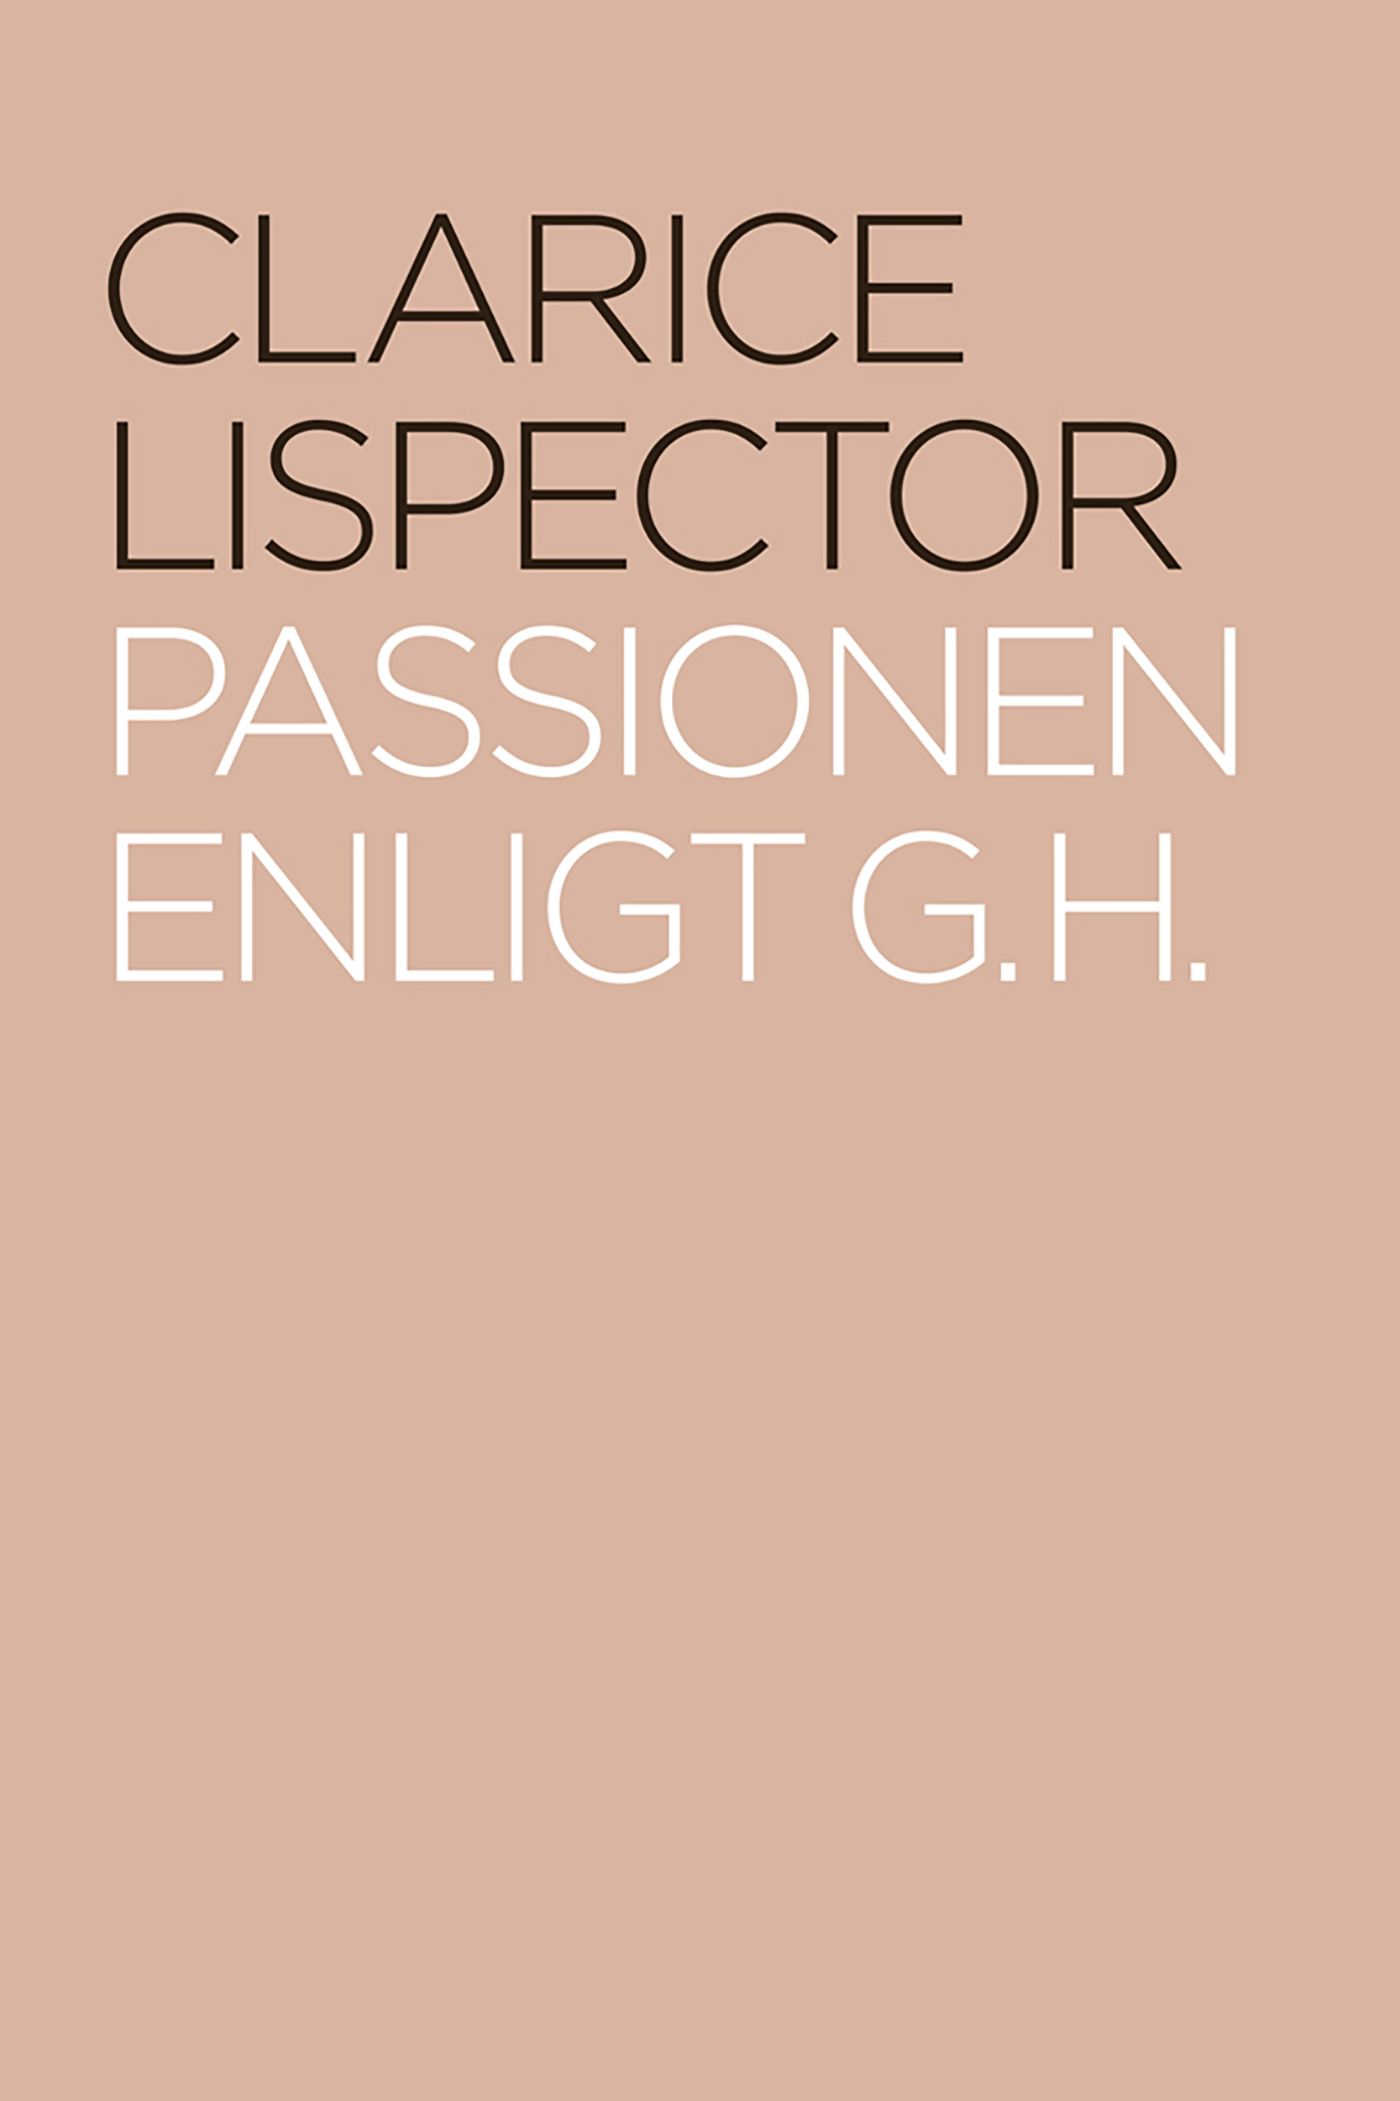 Passionen enligt G. H., e-bog af Clarice Lispector